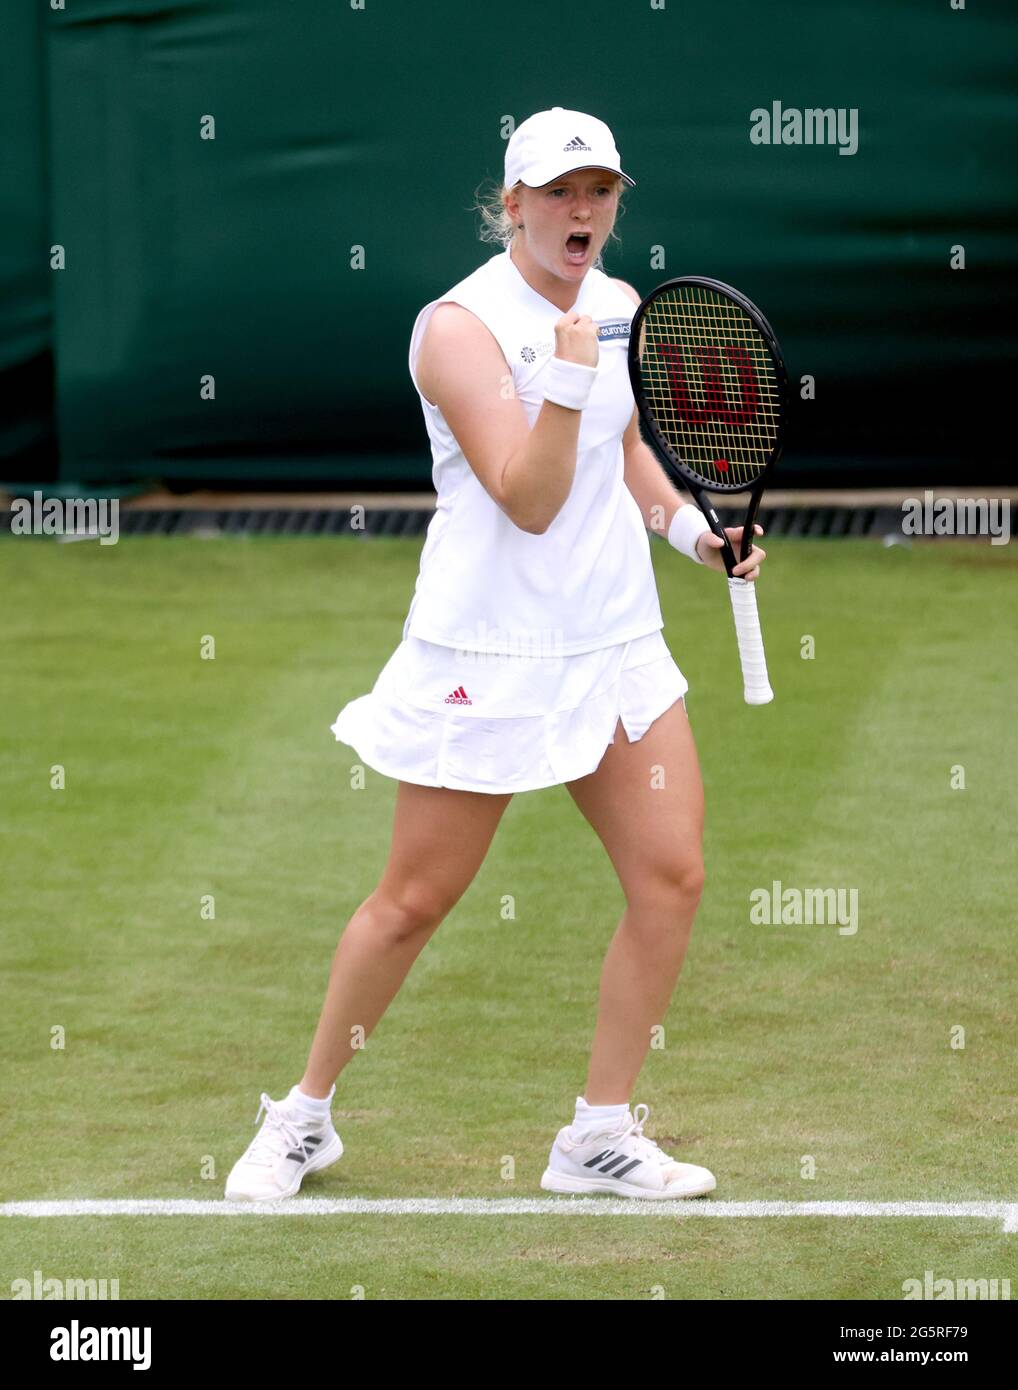 Am zweiten Tag von Wimbledon im All England Lawn Tennis and Croquet Club, Wimbledon, reagiert Frau Jones während ihres ersten Damen-Einzel-Spiels gegen Coco Gauff auf Platz 2. Bilddatum: Dienstag, 29. Juni 2021. Stockfoto